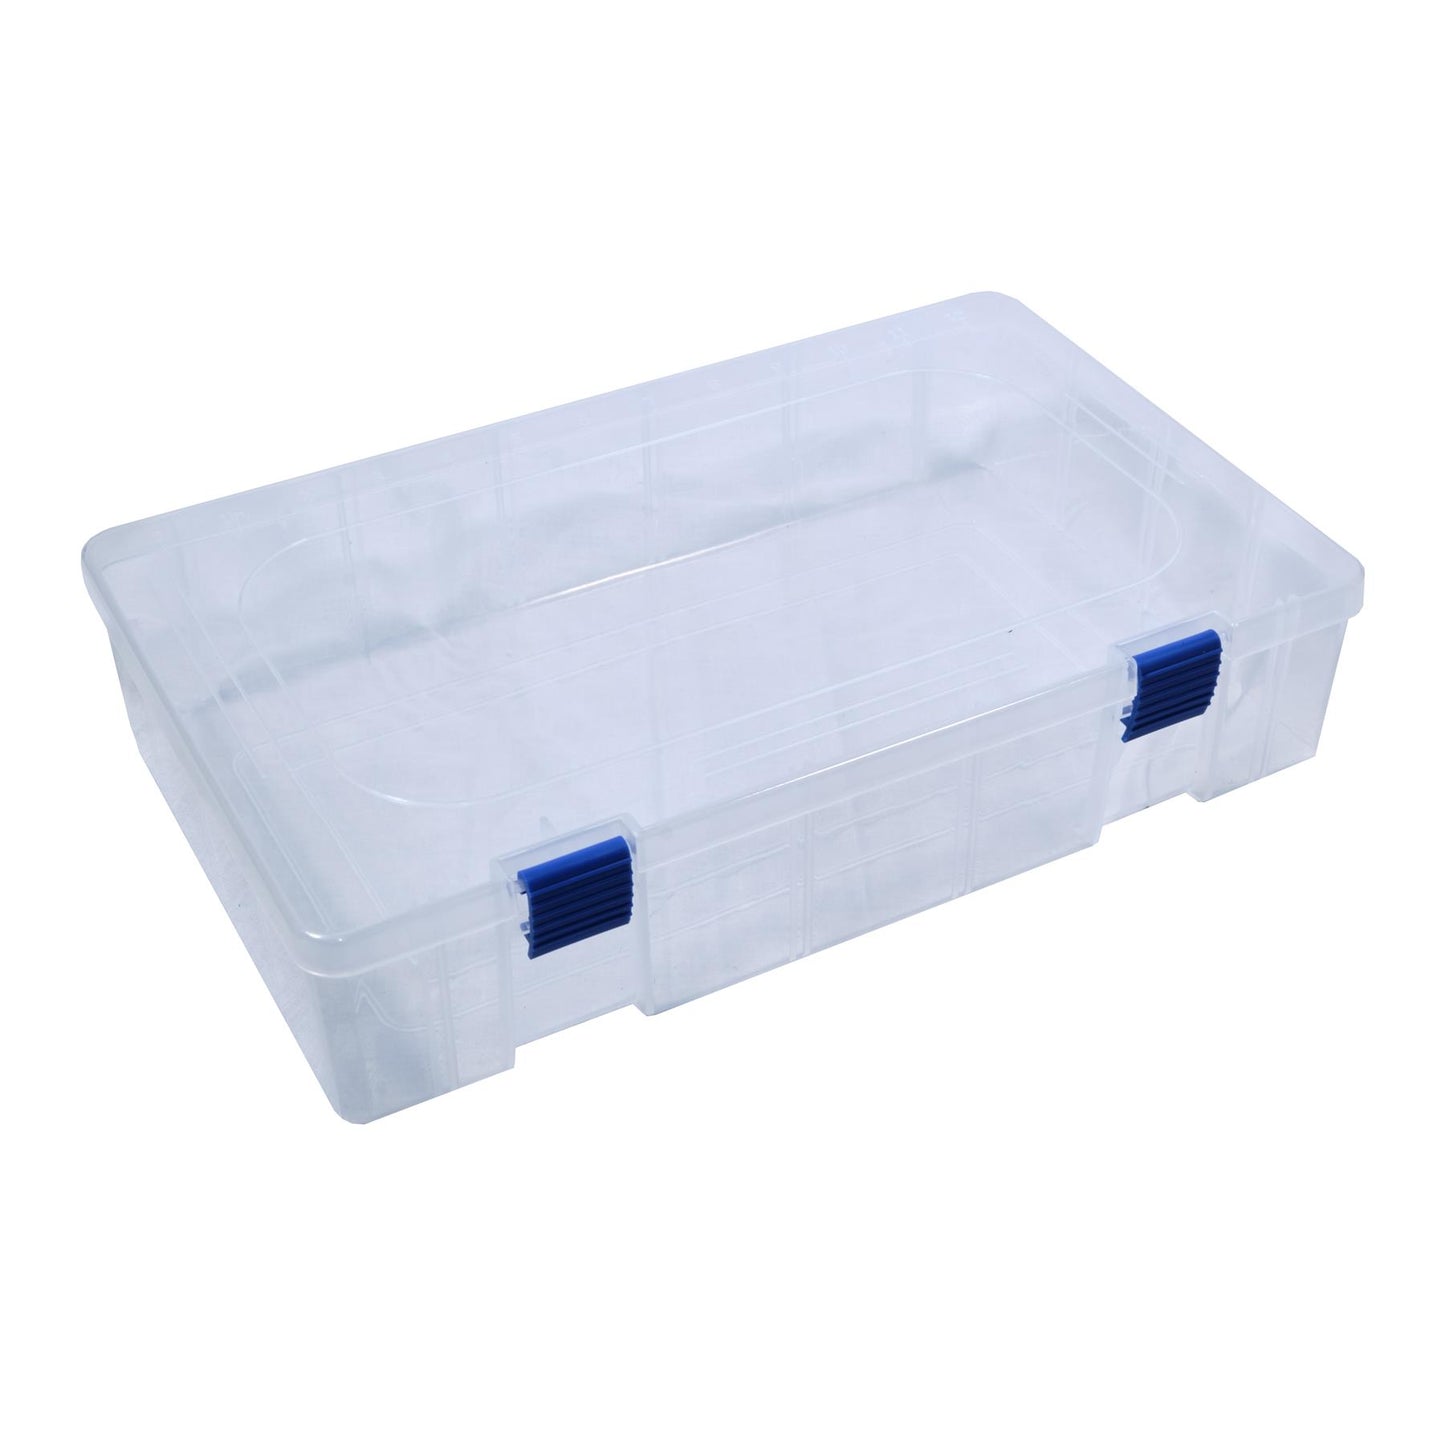 TronixPro Tackle Storage Box